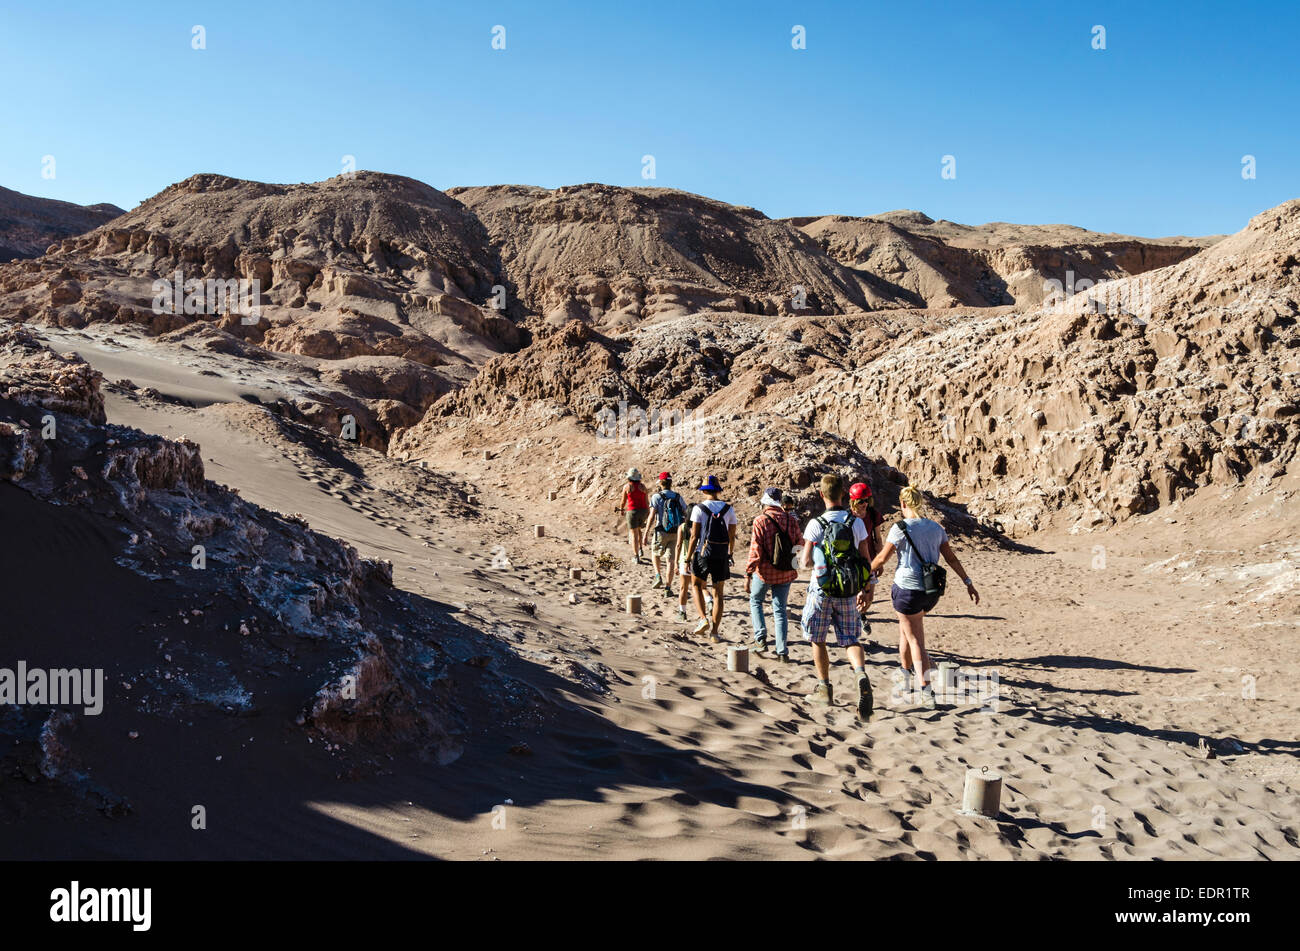 People Walking through Atacama Desert, Chile Stock Photo